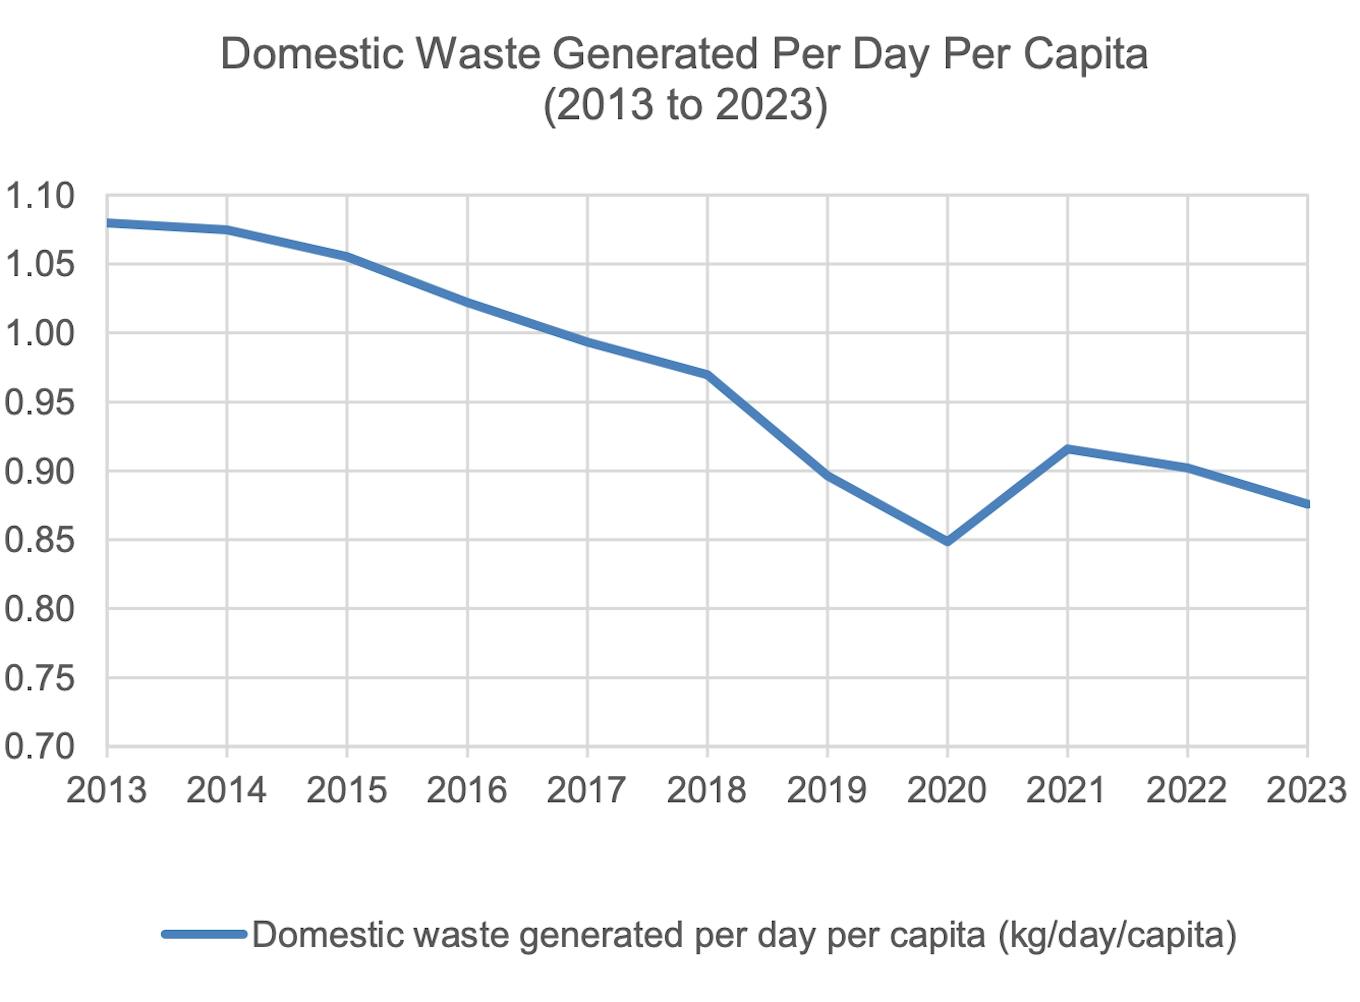 Singapore's domestic waste per capita since 2013